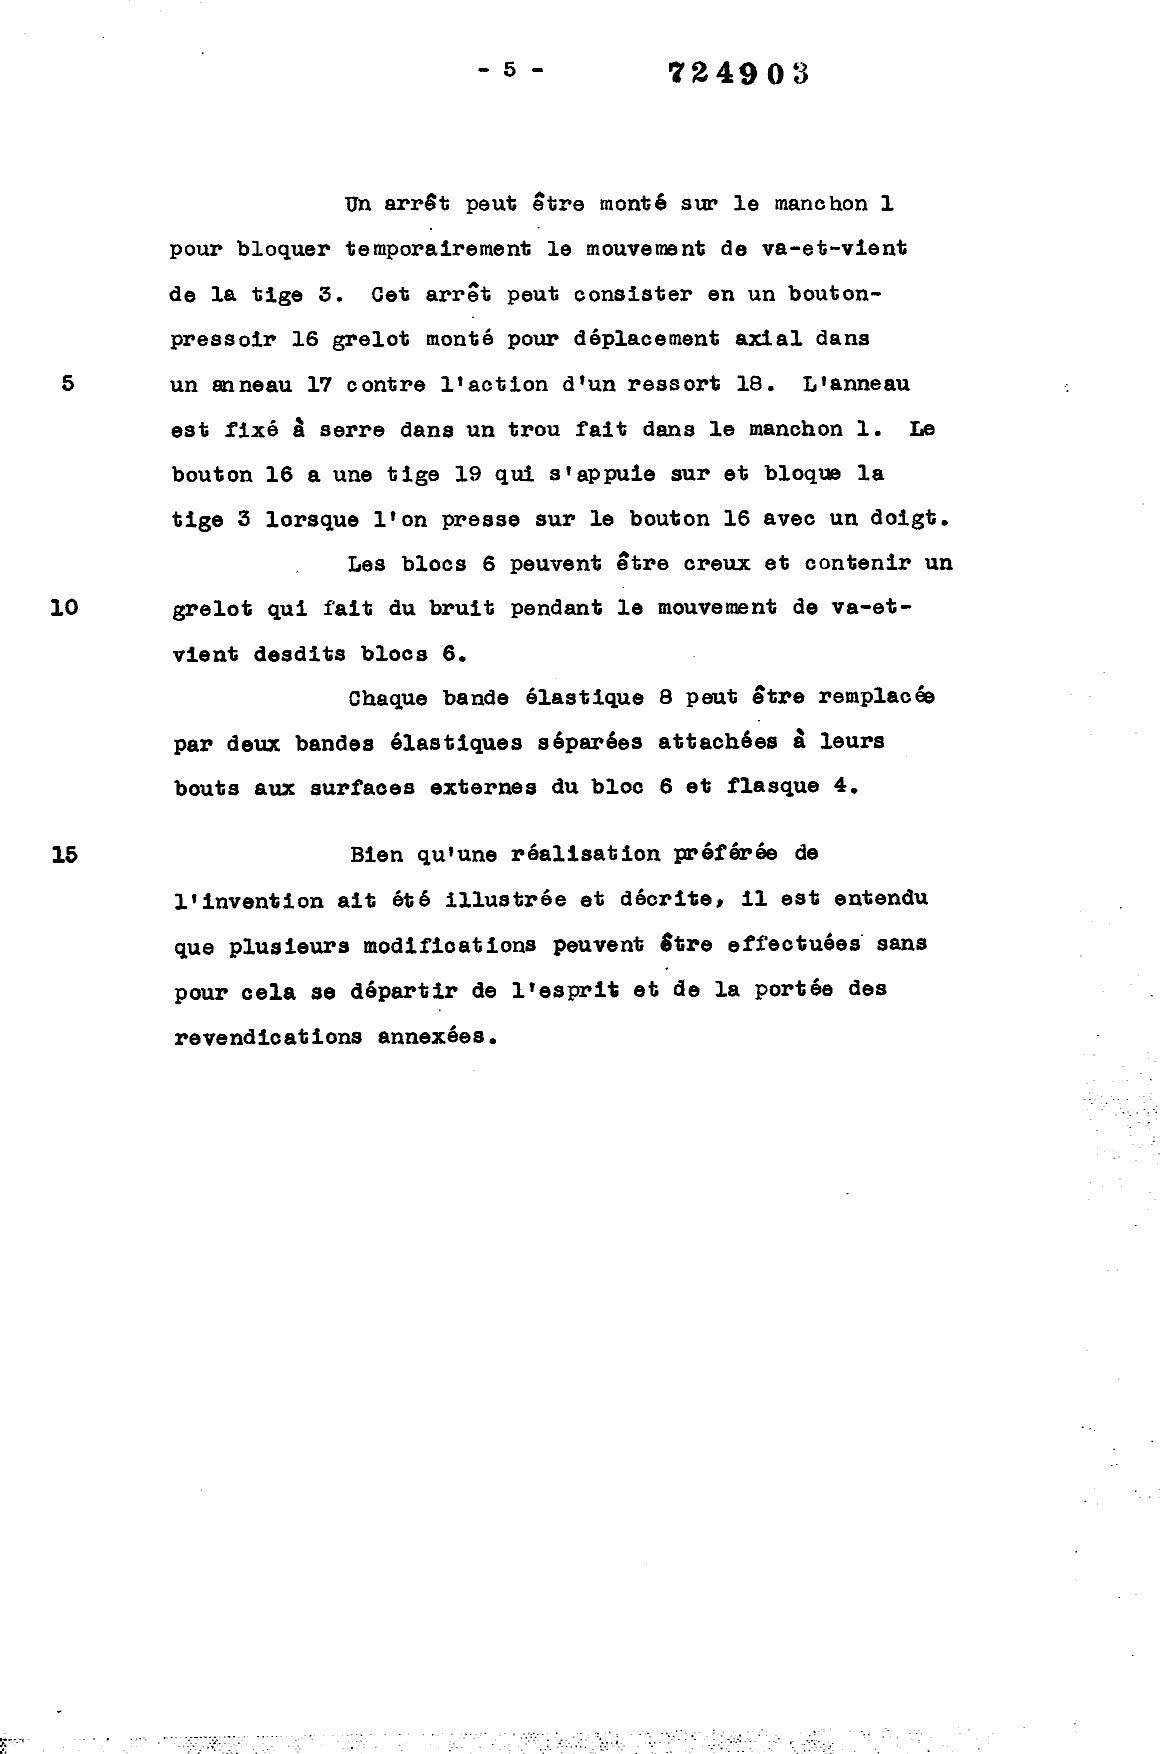 Canadian Patent Document 724903. Description 19941126. Image 4 of 4